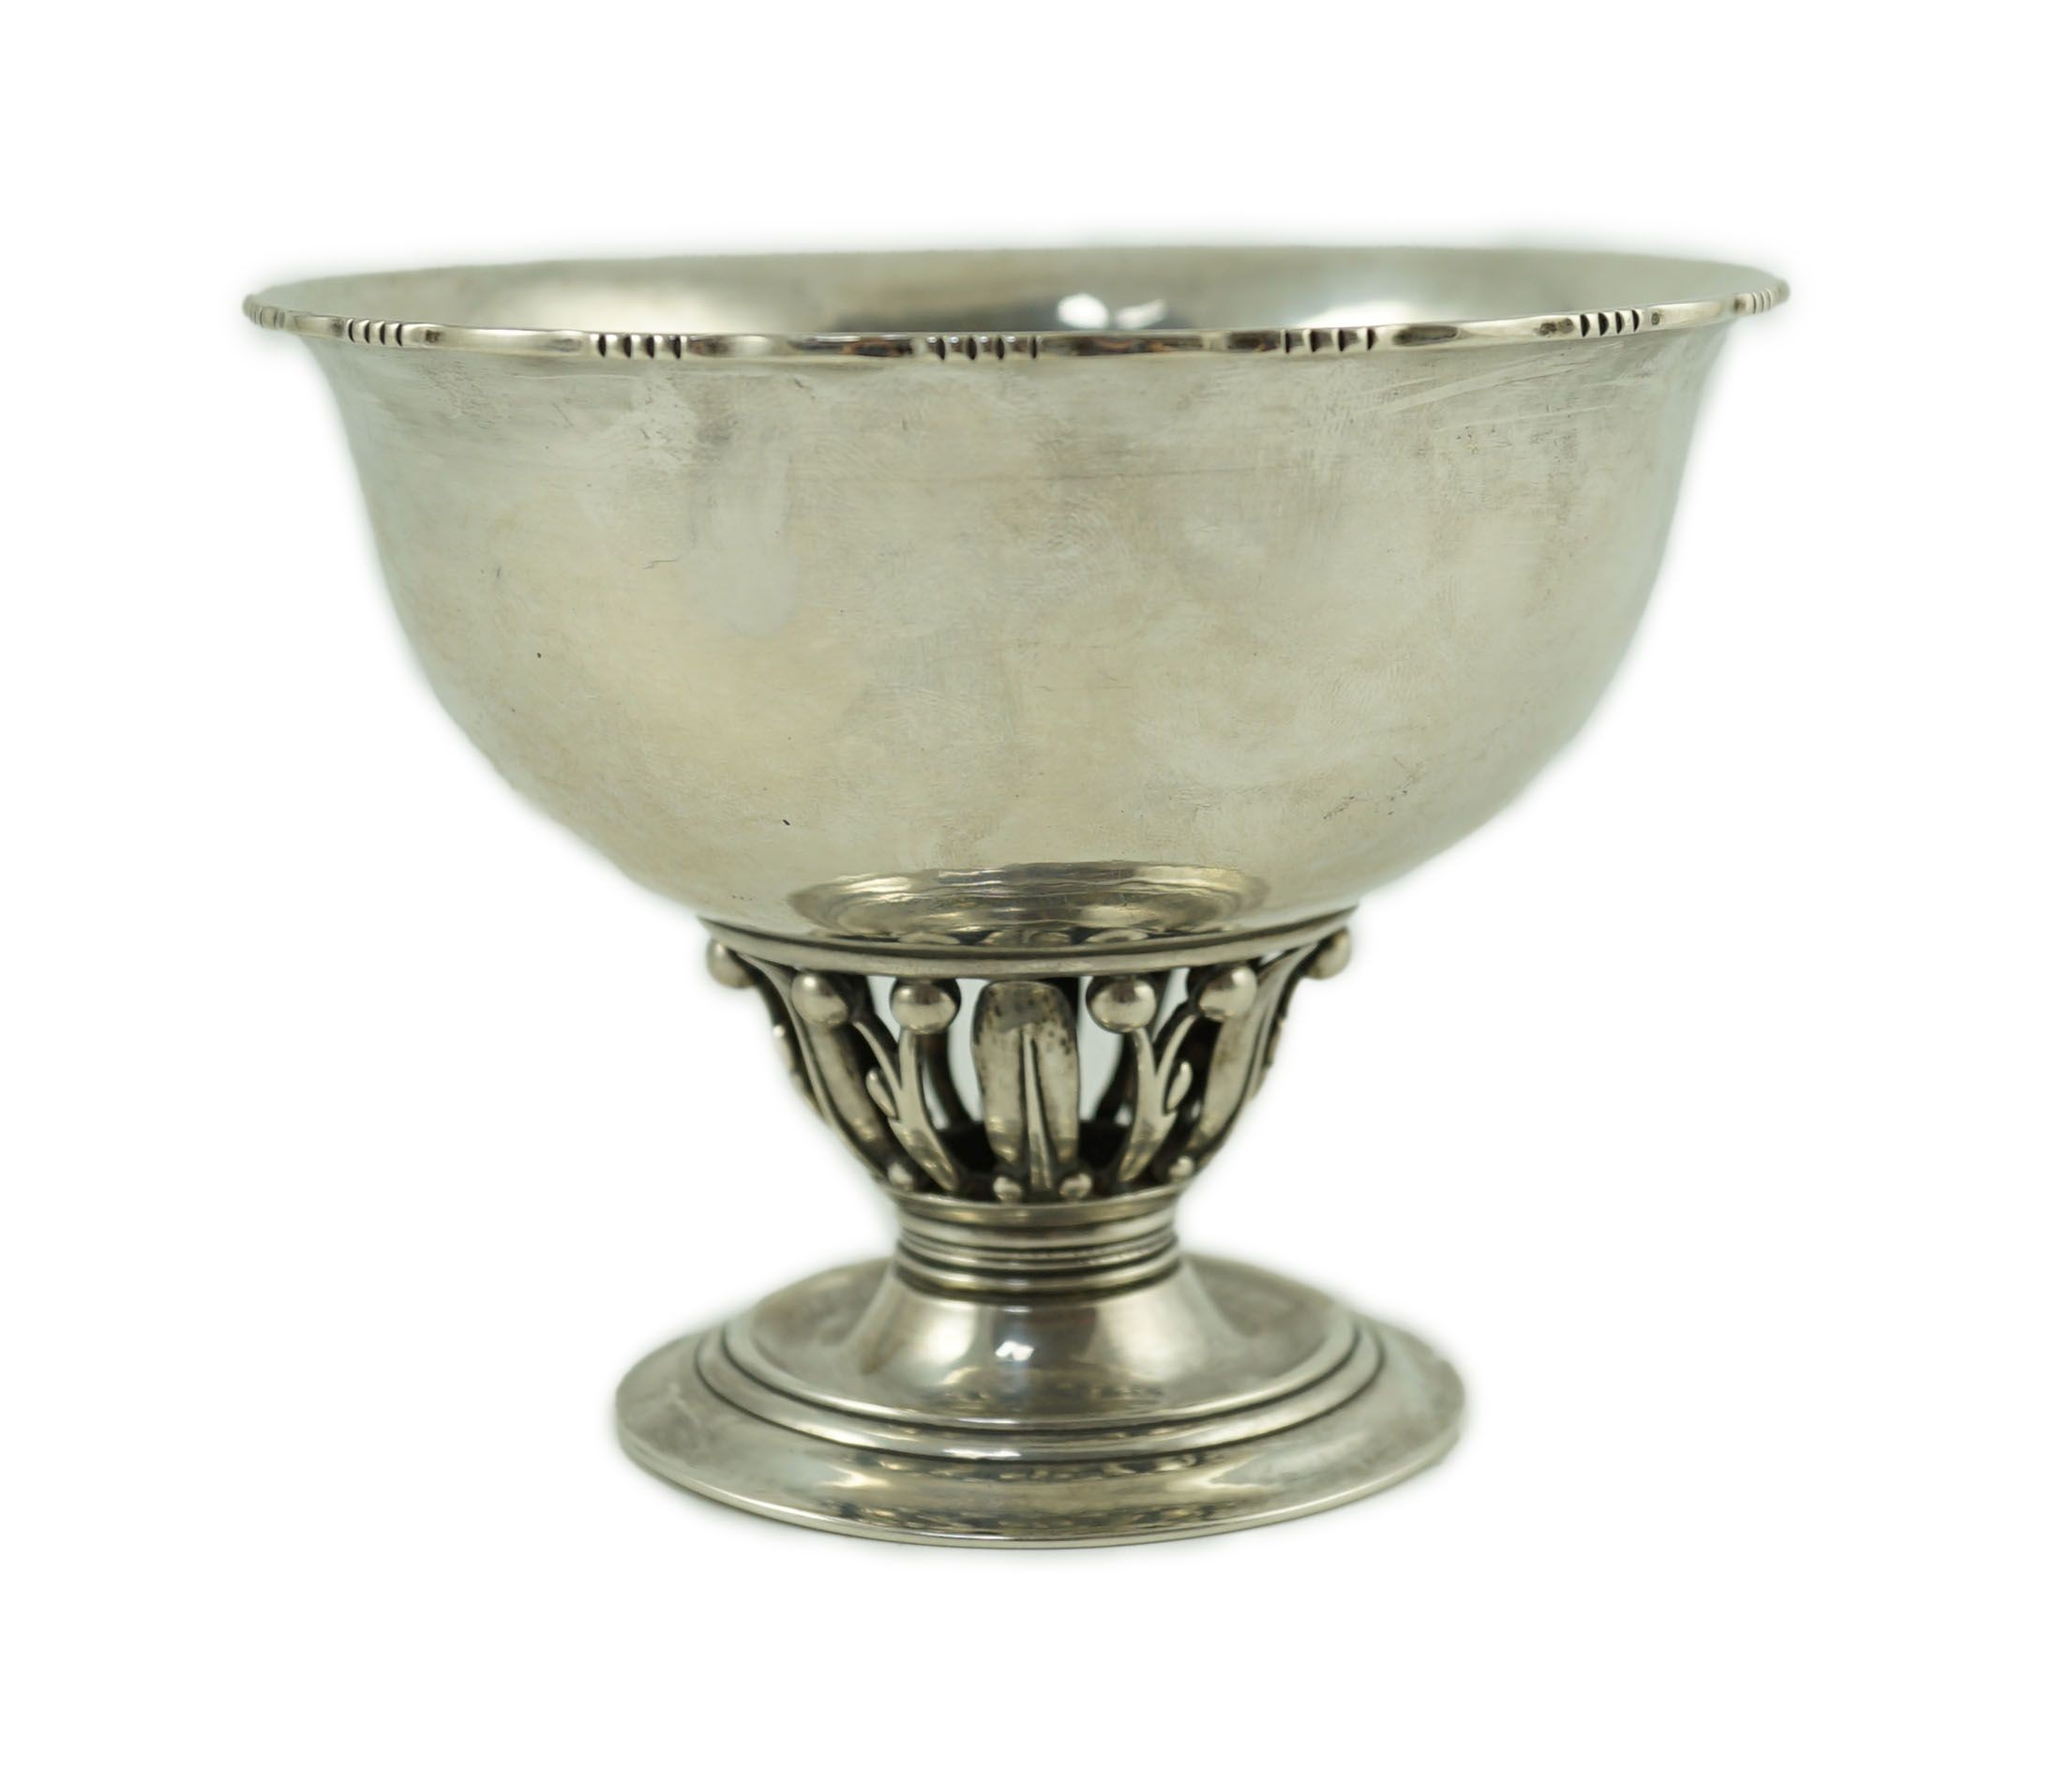 A 1920's Georg Jensen silver Louvre pattern pedestal bowl, design no. 180 B                                                                                                                                                 